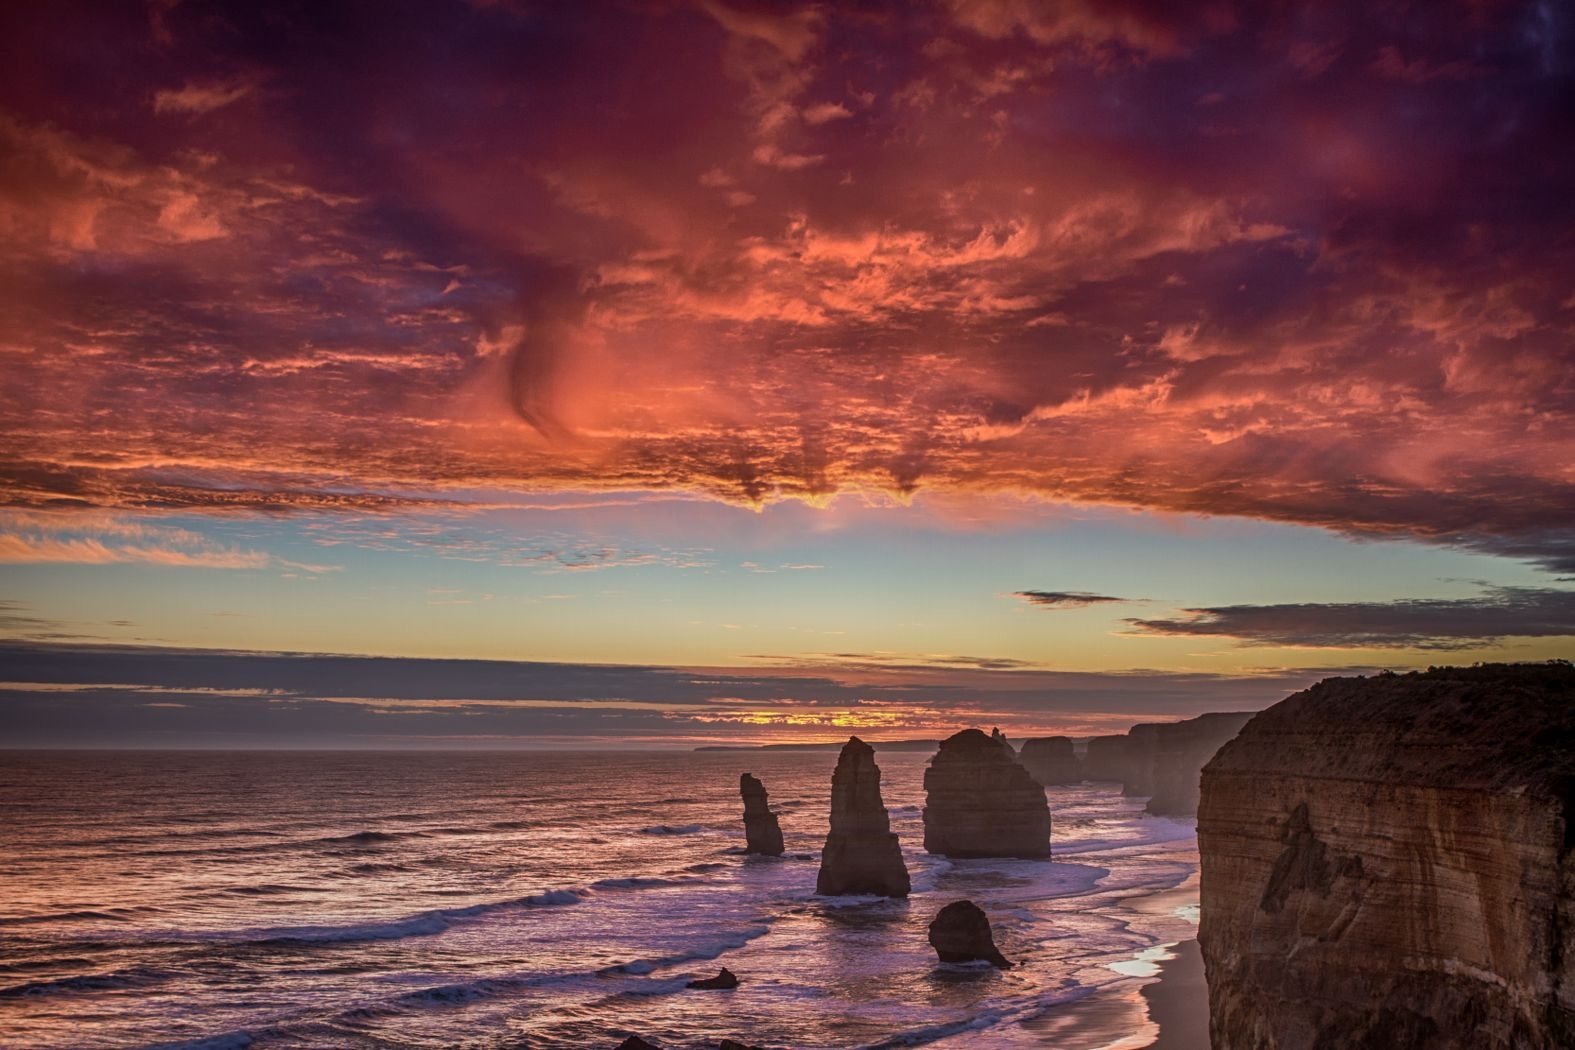 12 Apostles, Great Ocean Road, Victoria, Australia